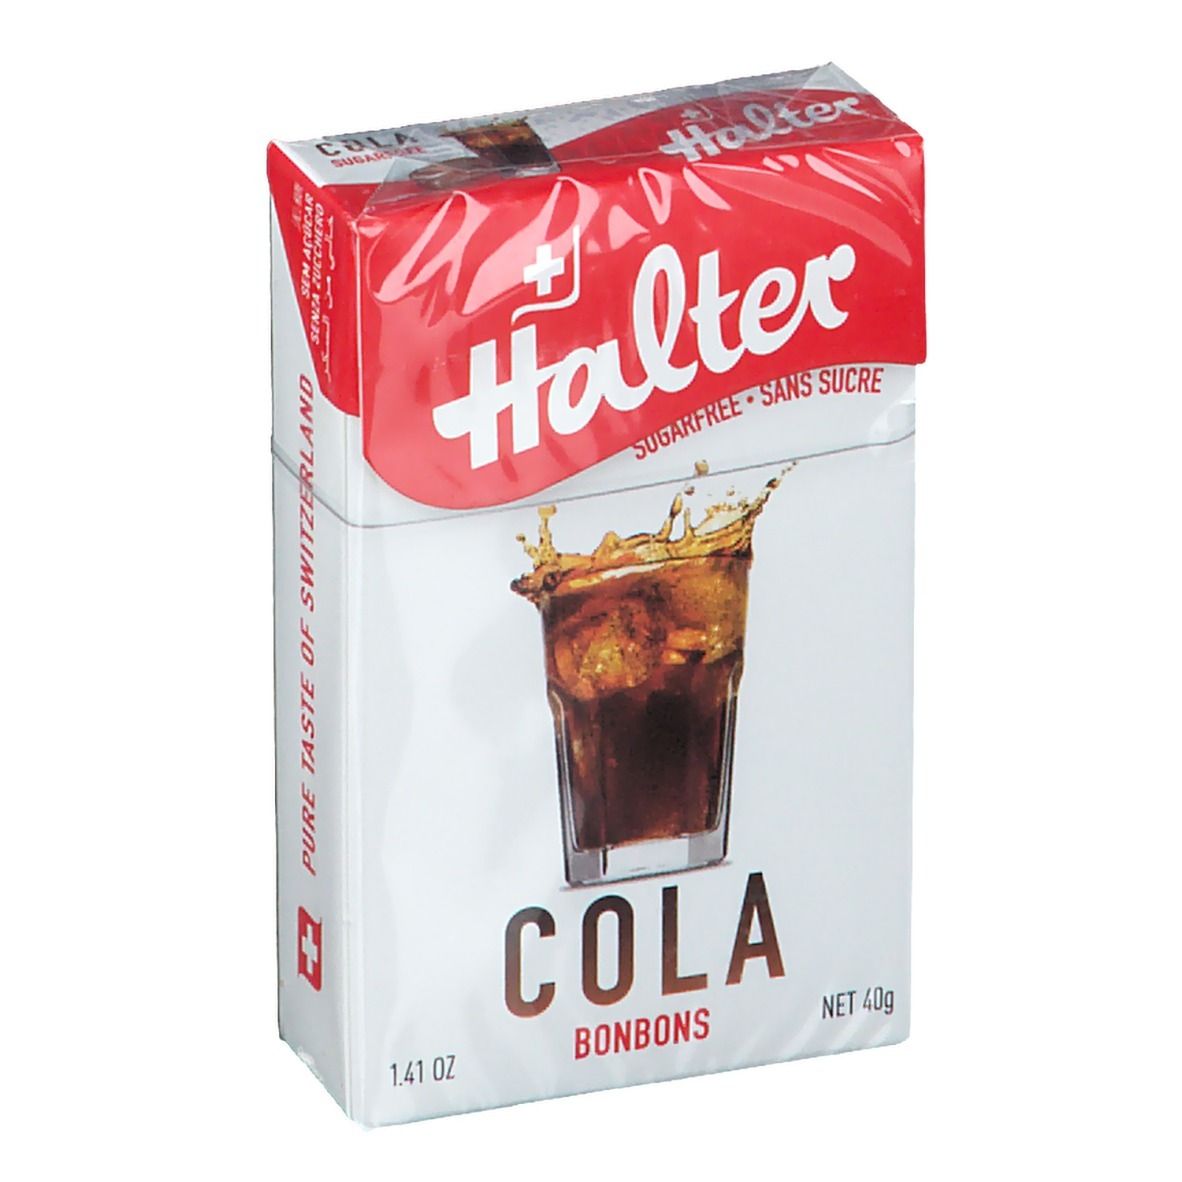 Image of Halter Cola Bonbons Zuckerfrei